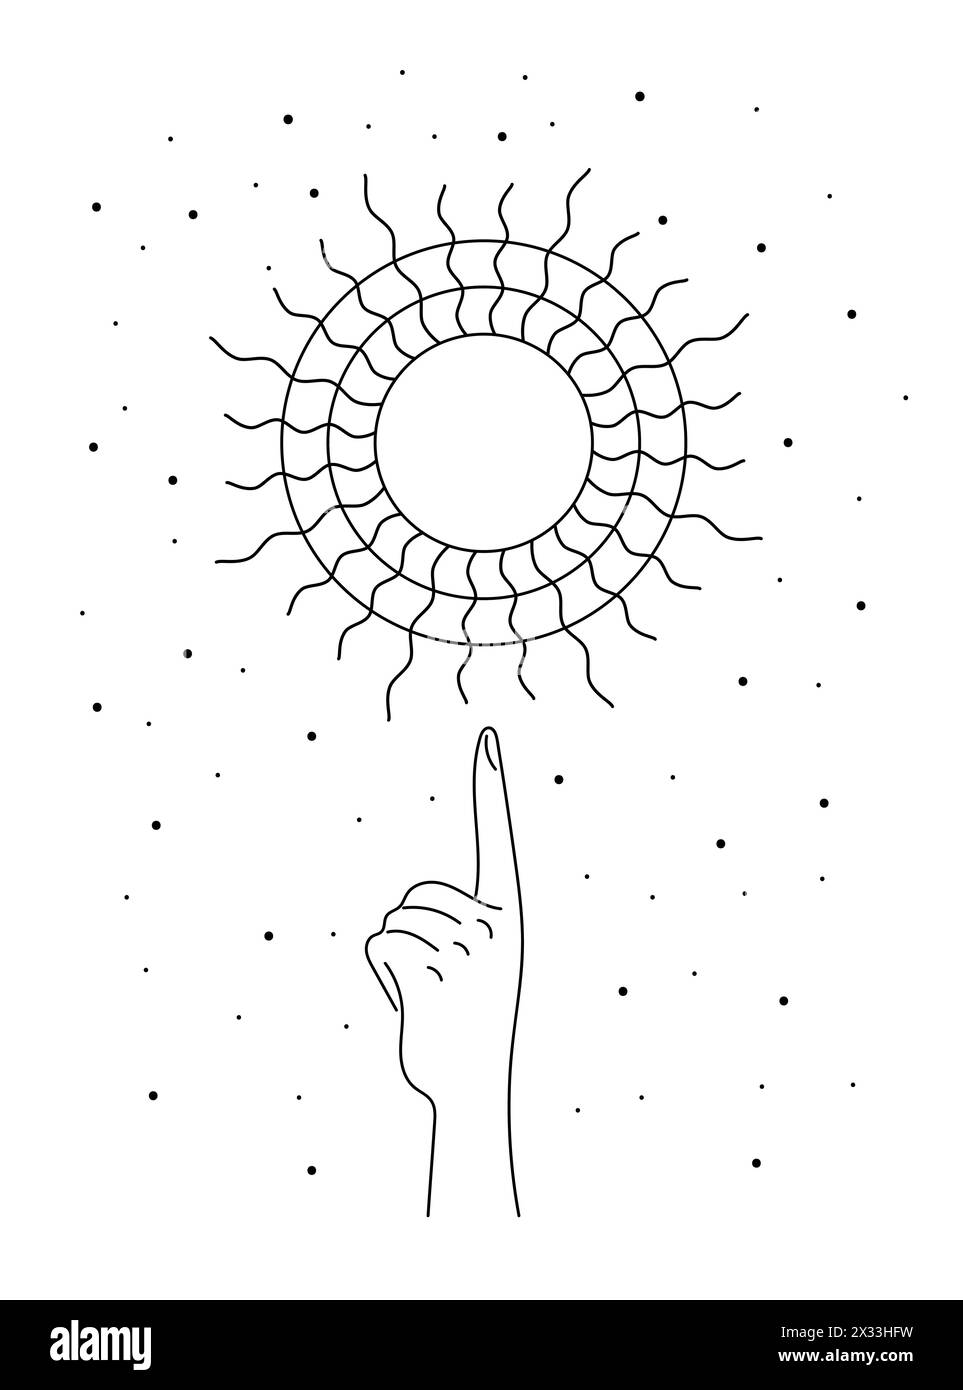 Les rayons de soleil du solstice d'été céleste mystique lévitent sur la main de la femme. Symbole linéaire de vacances d'équinoxe de spiritualité. Tatouage ésotérique ou esquisse de contour de logo. Logotype eps de vecteur d'été de style bohémien Illustration de Vecteur